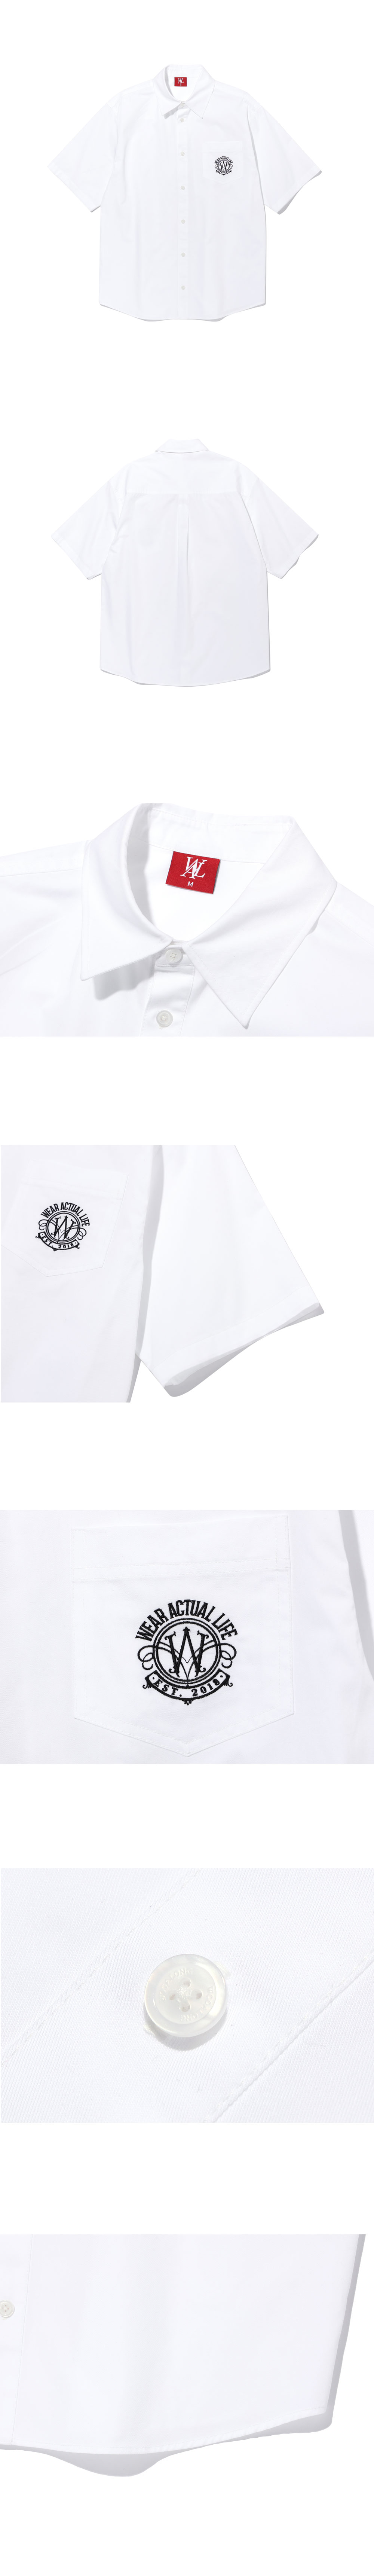 우알롱(WOOALONG) Circular pocket overfit shirt - WHITE - 109,000 